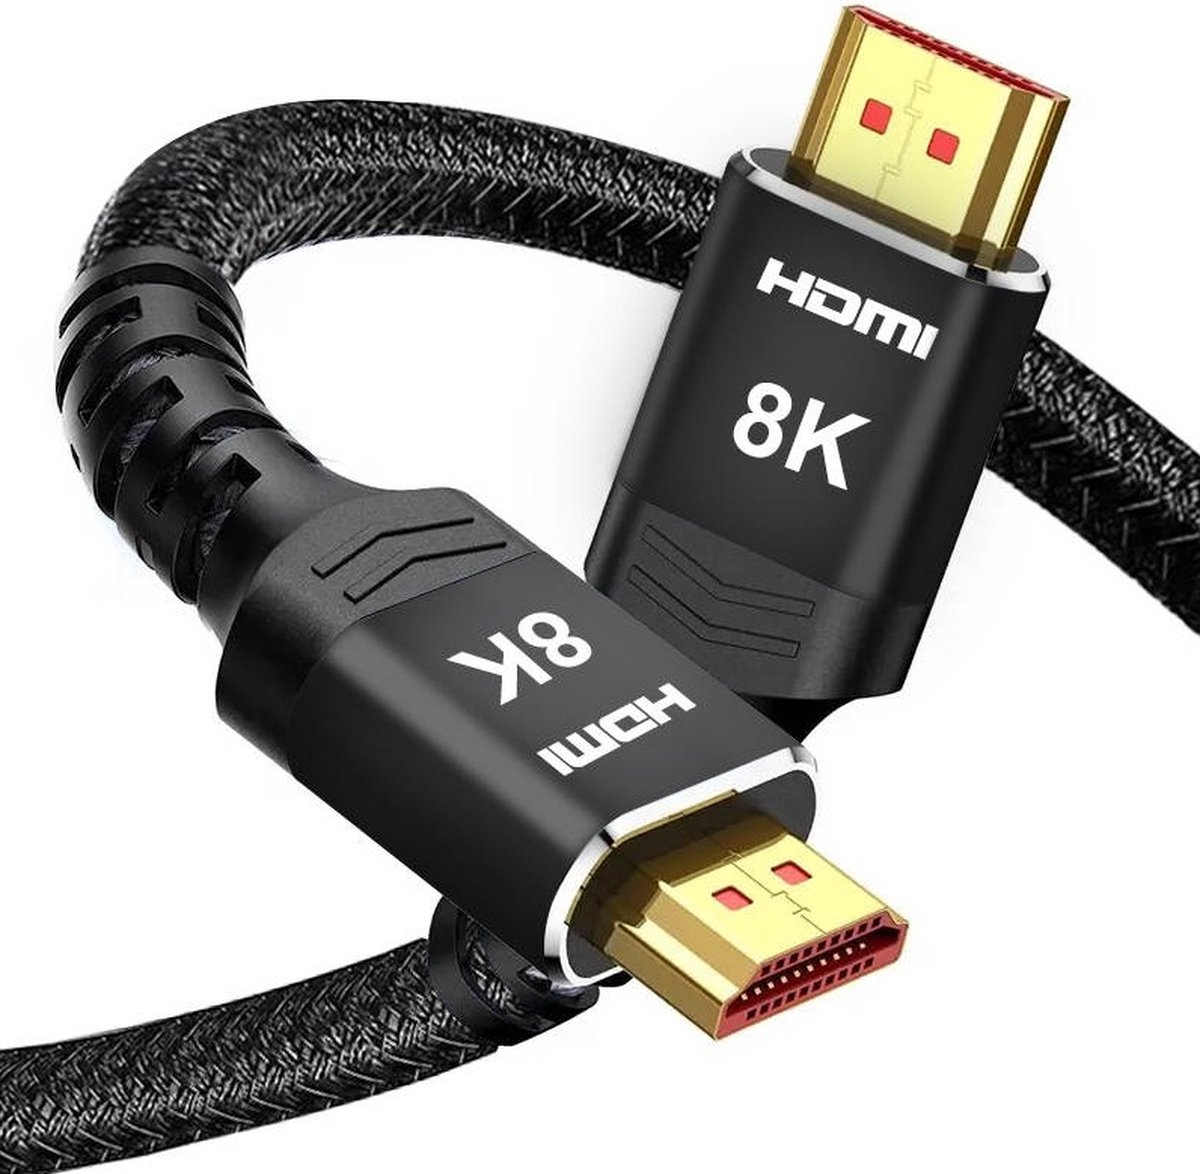 HDMI kabel - HDMI 2.1 kabel - HDMI kabel 2 meter - 8K - 60Hz - Ultra HD - 48 Gbps - Geschikt voor Xbox Series X & PS5 - Aluminium